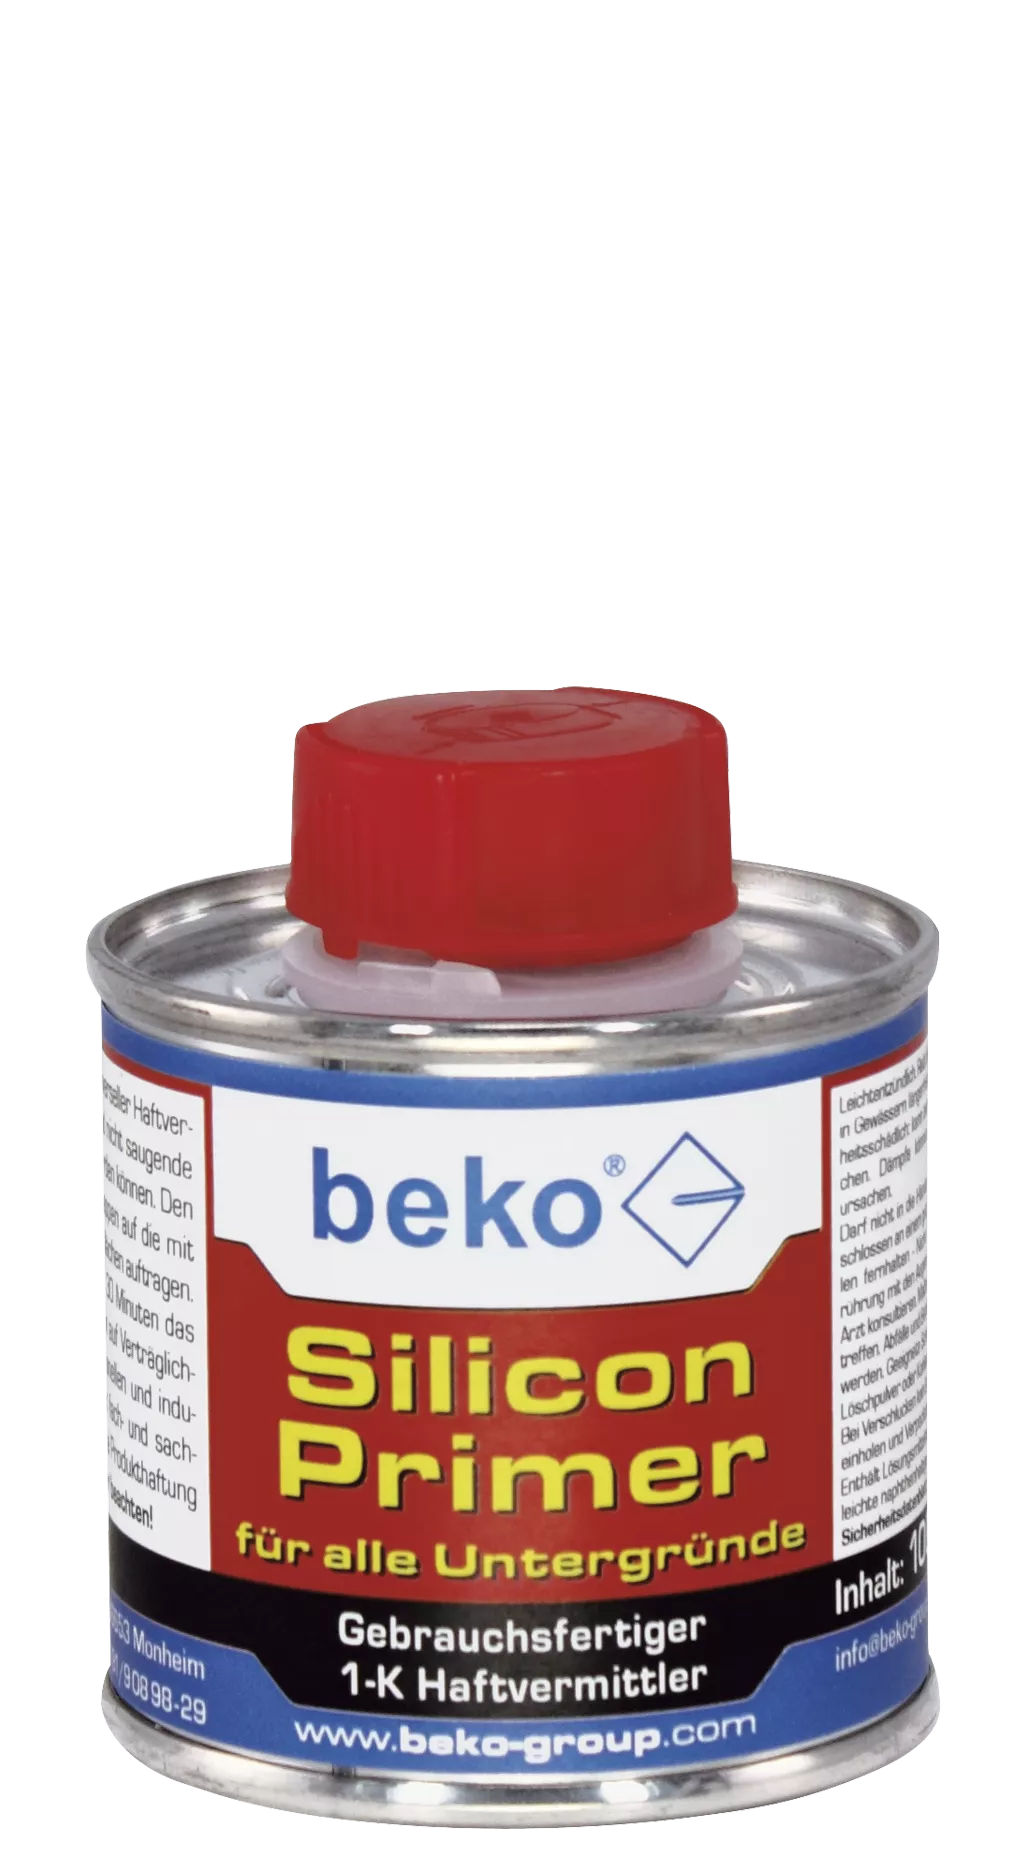 beko Silicon Primer 100 ml Dose, für alle Untergründe